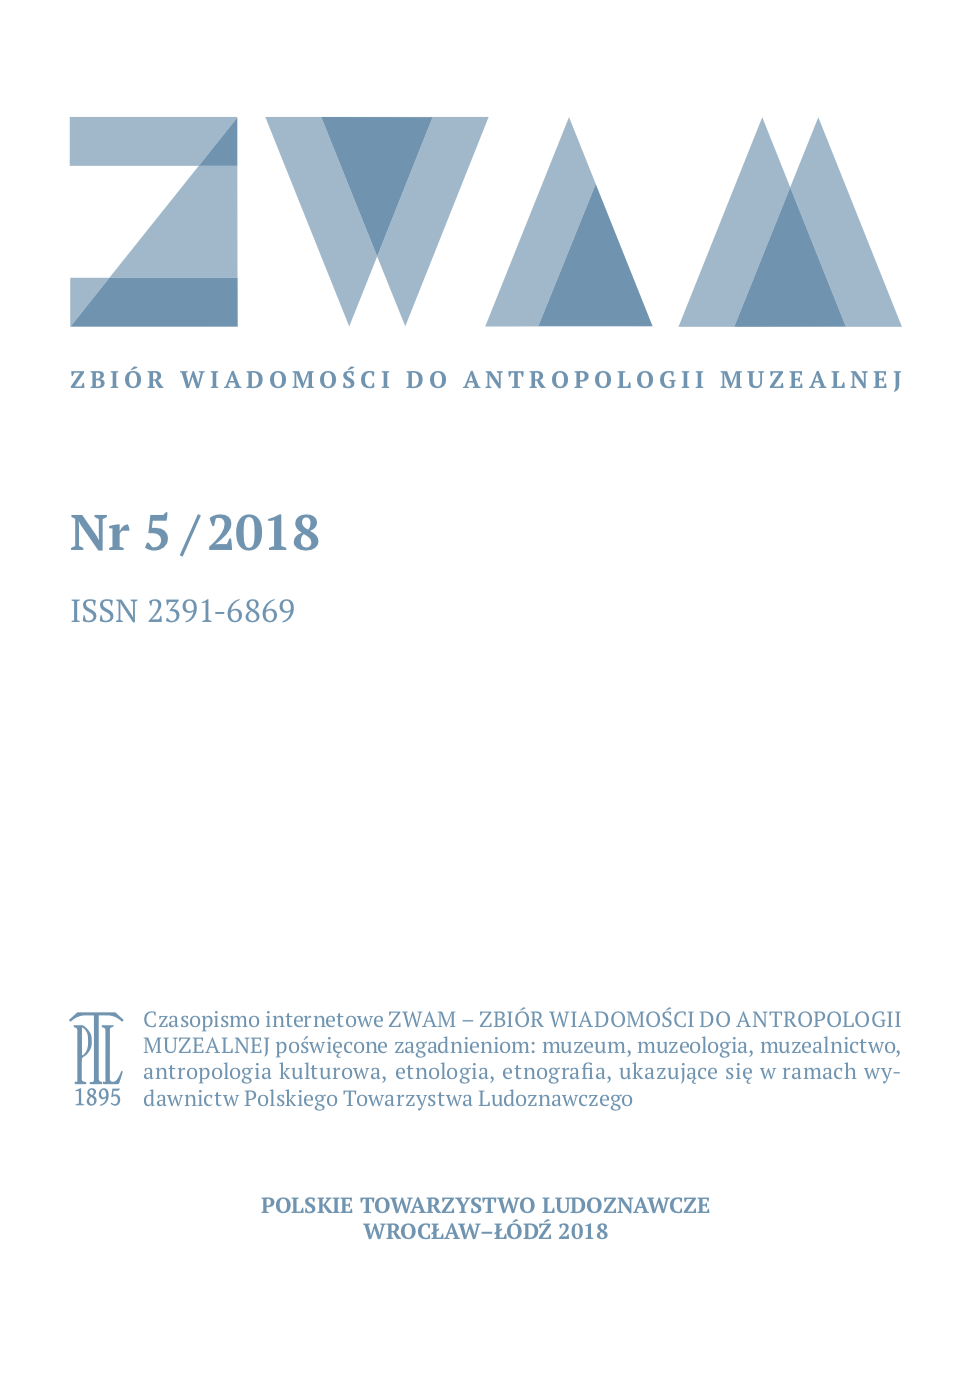 Doktoranci dla dziedzictwa kulturowego. Sprawozdanie z warsztatów UNA EUROPA, 21-24 listopada 2018, Uniwersytet Complutense, Madryt (Katarzyna Zięba) Cover Image